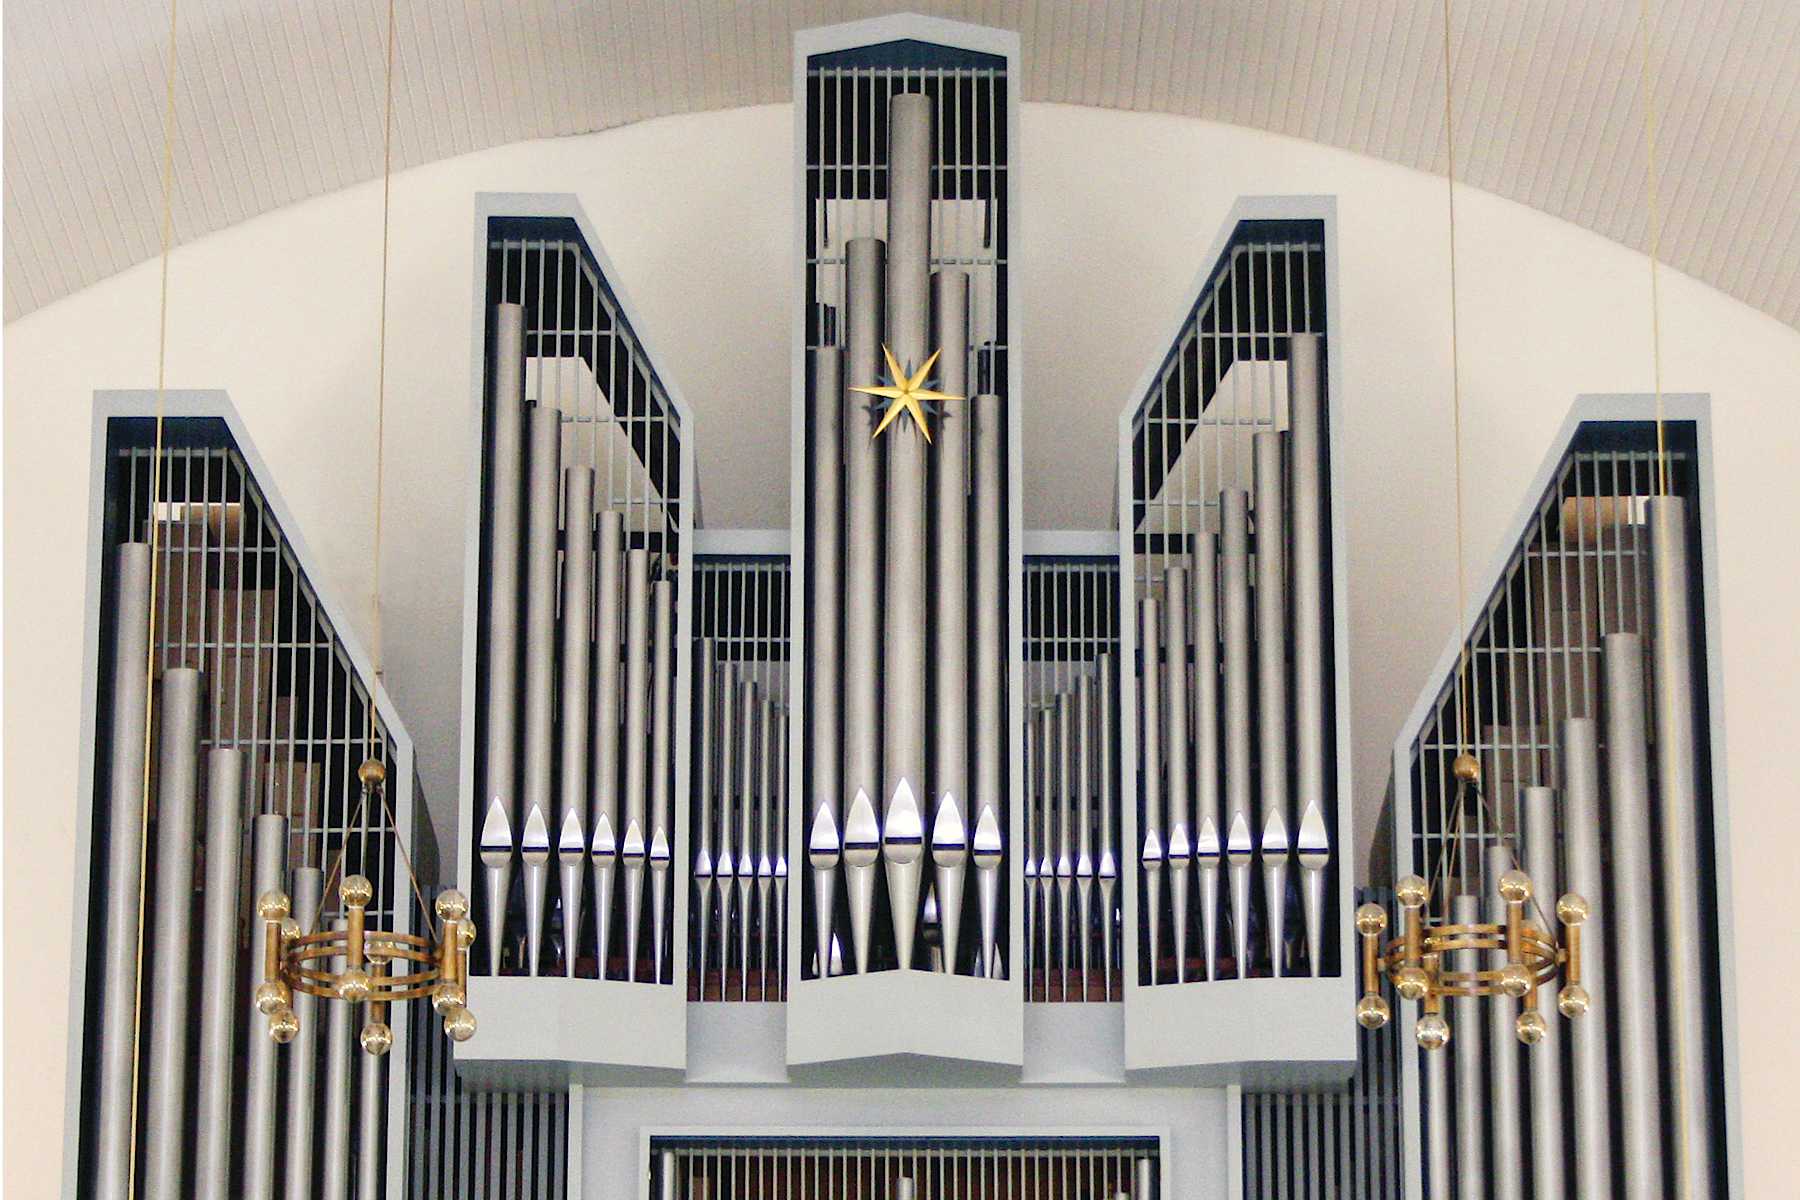 Orgel Steinhude